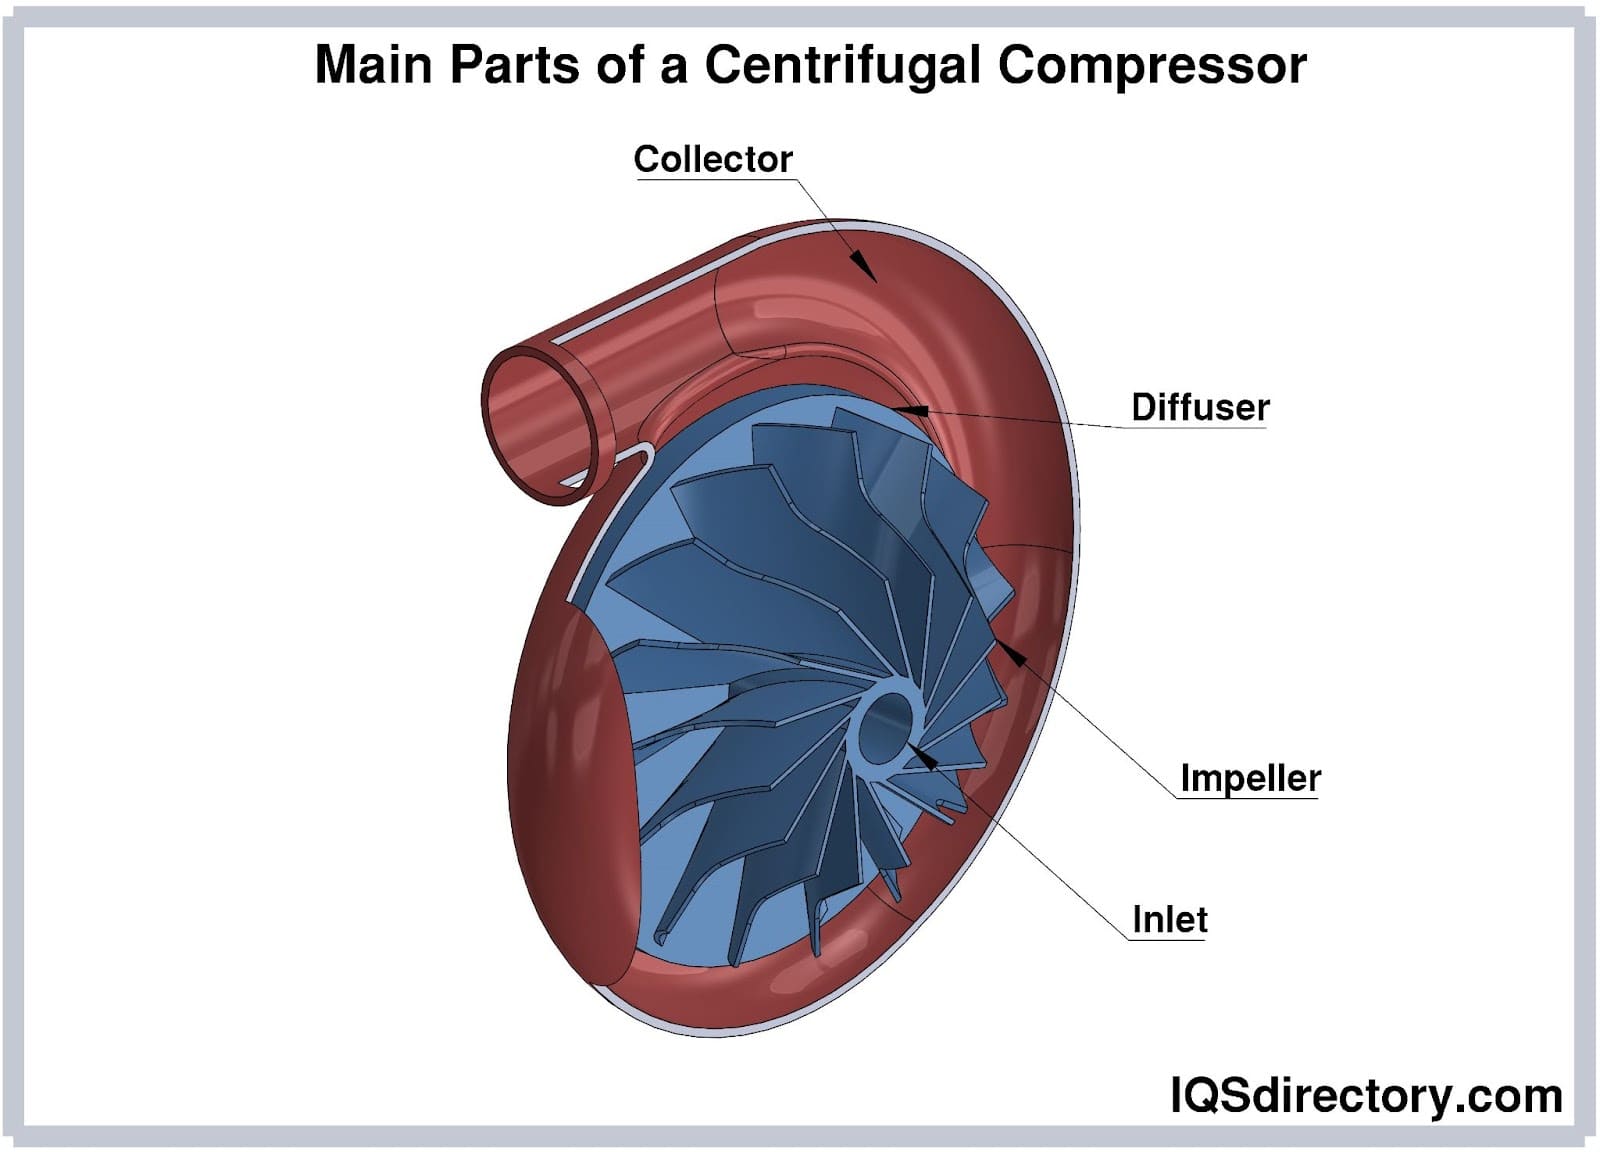 Main Parts of a Centrifugal Compressor